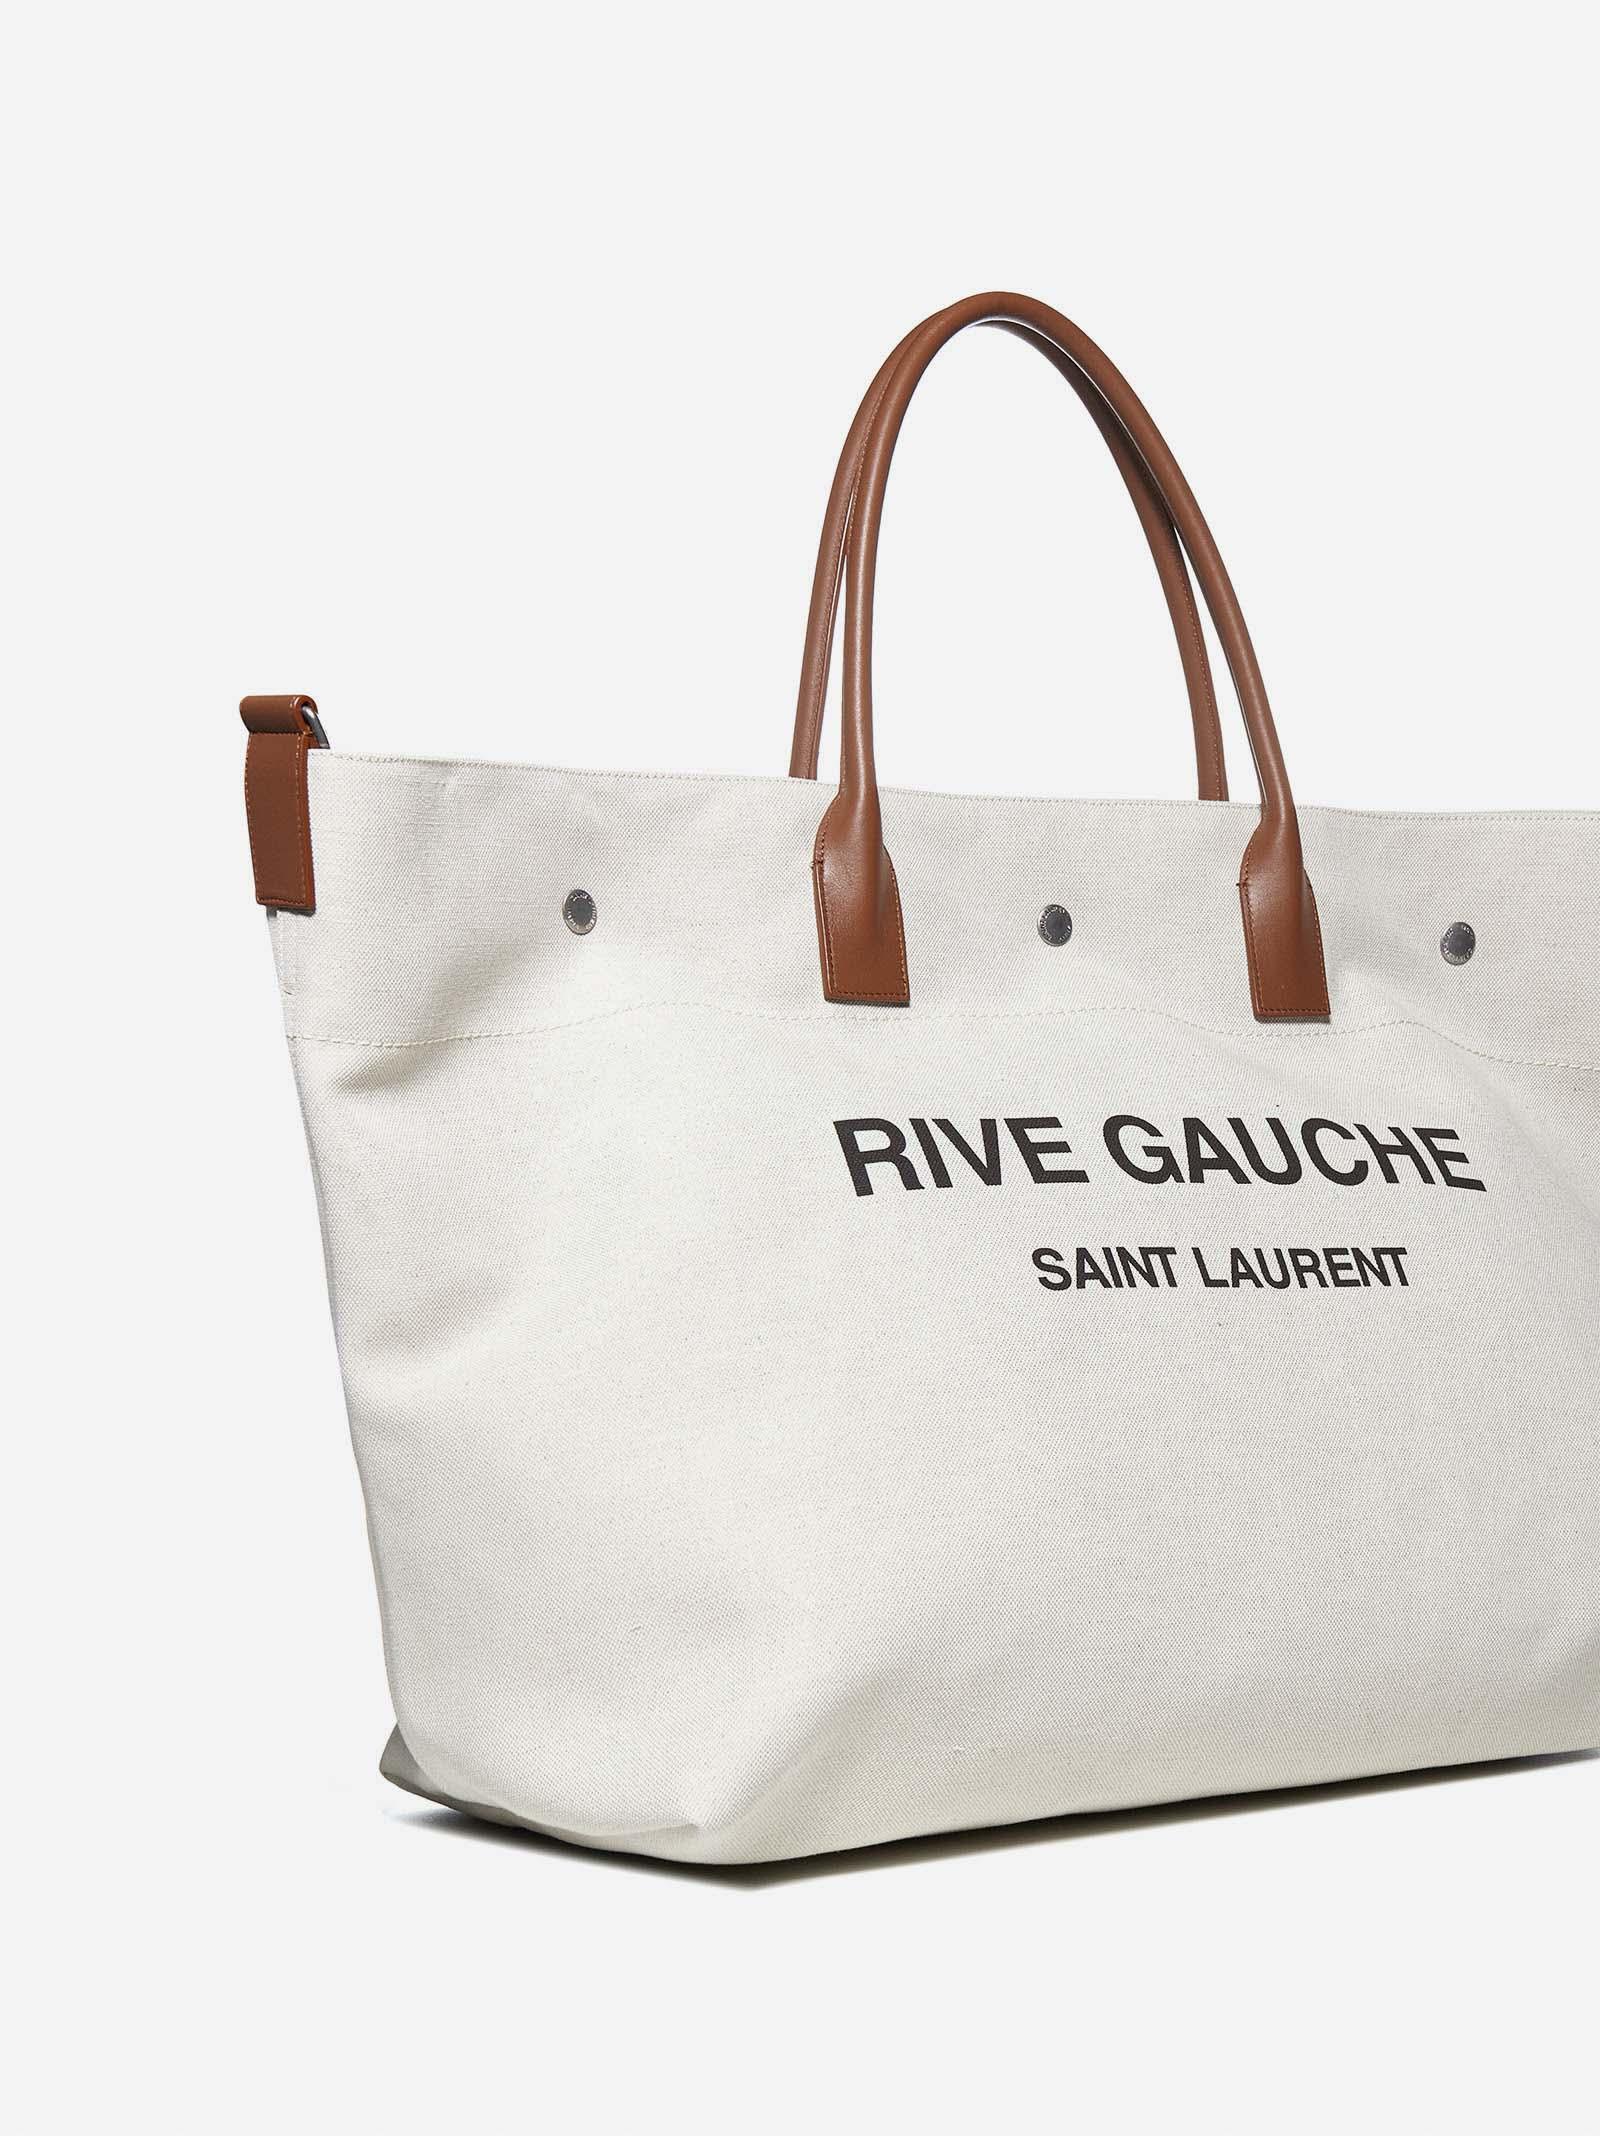 Saint Laurent Rive Gauche beige canvas tote bag